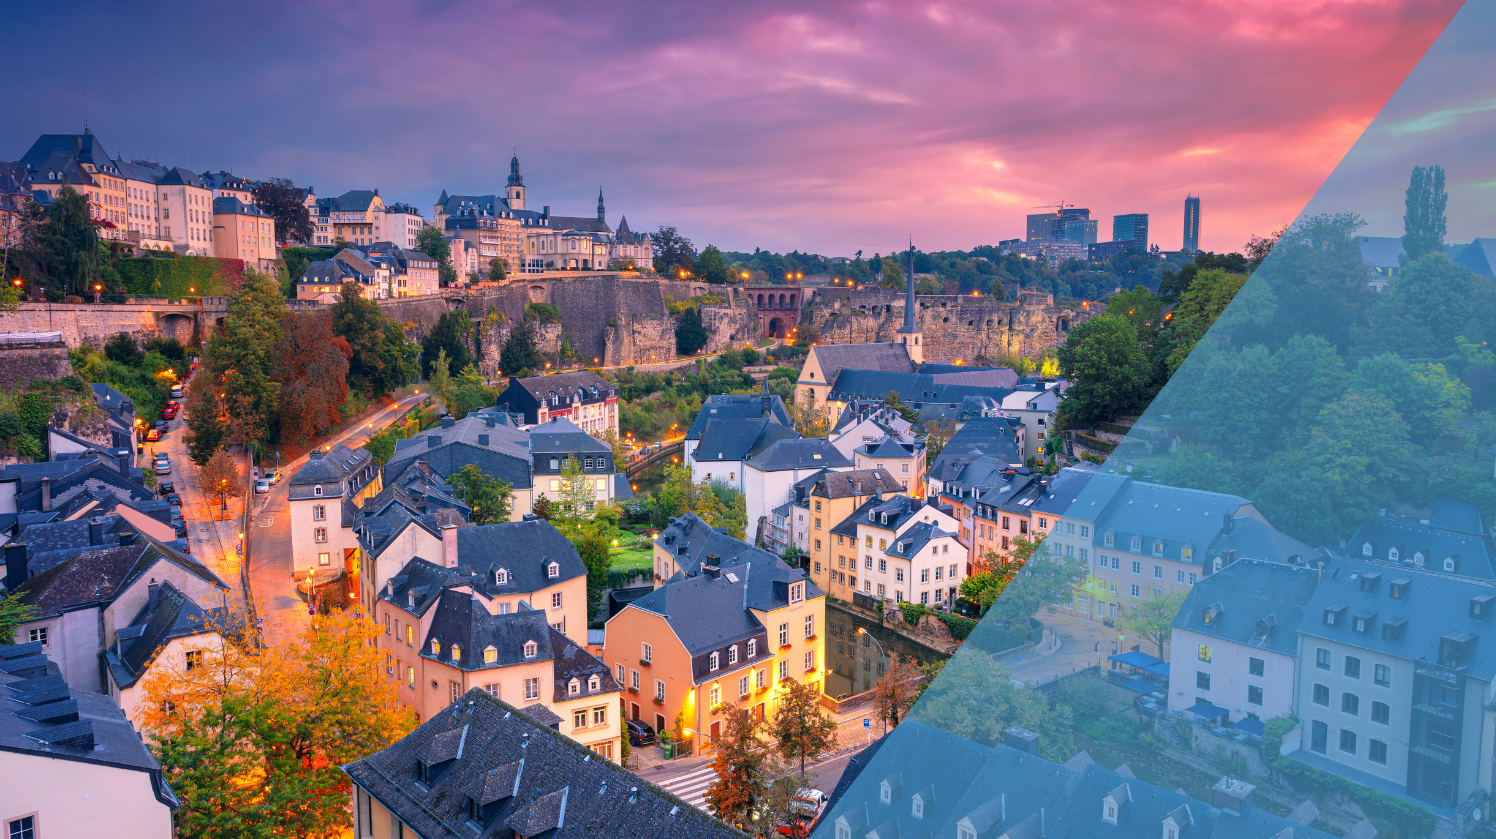 Périclès et NSI Luxembourg annoncent un partenariat stratégique pour renforcer l'excellence dans les services bancaires, financiers et d'assurance